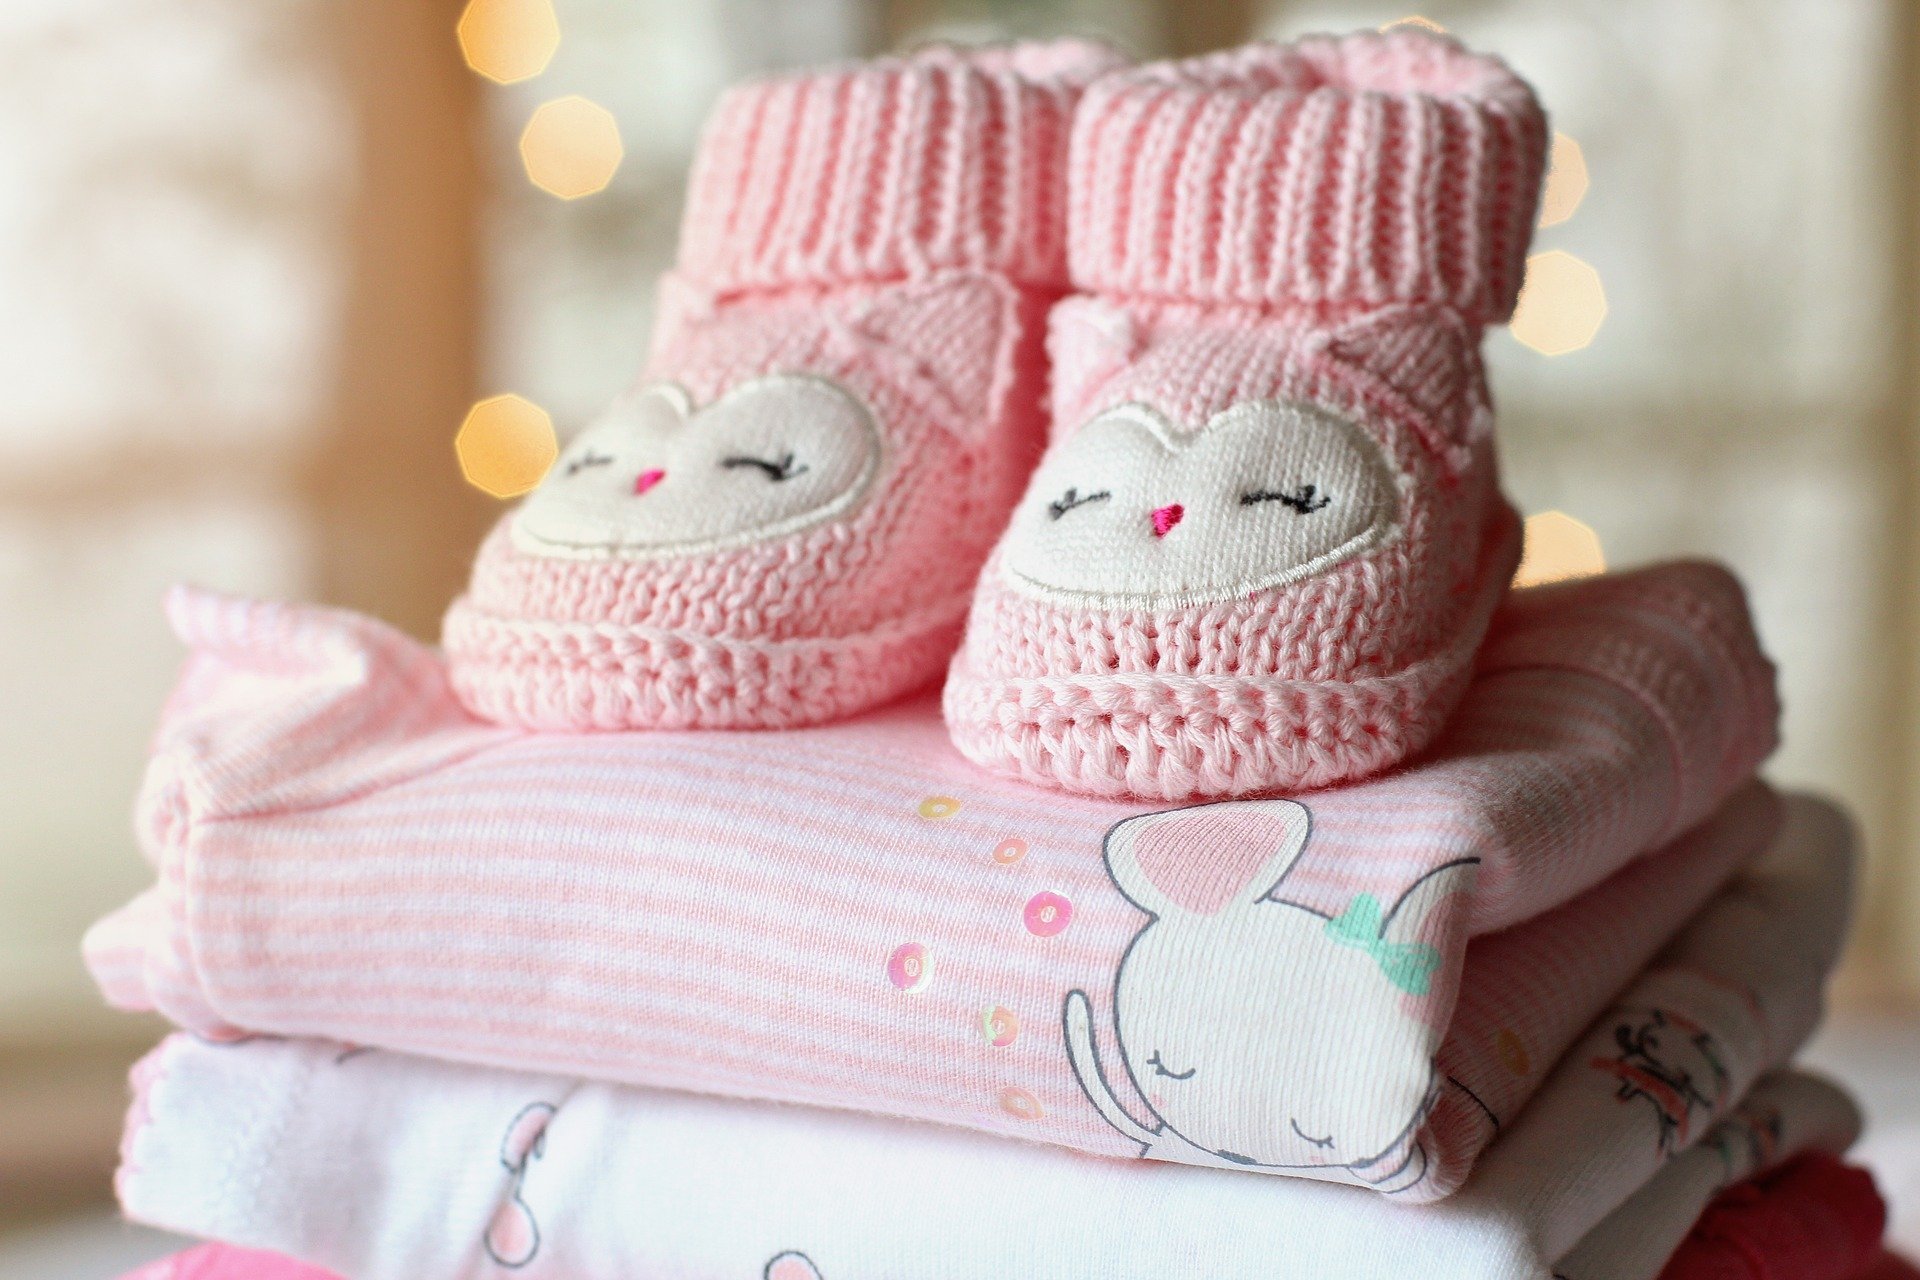 Des vêtements pour bébé. | Photo : Pixabay